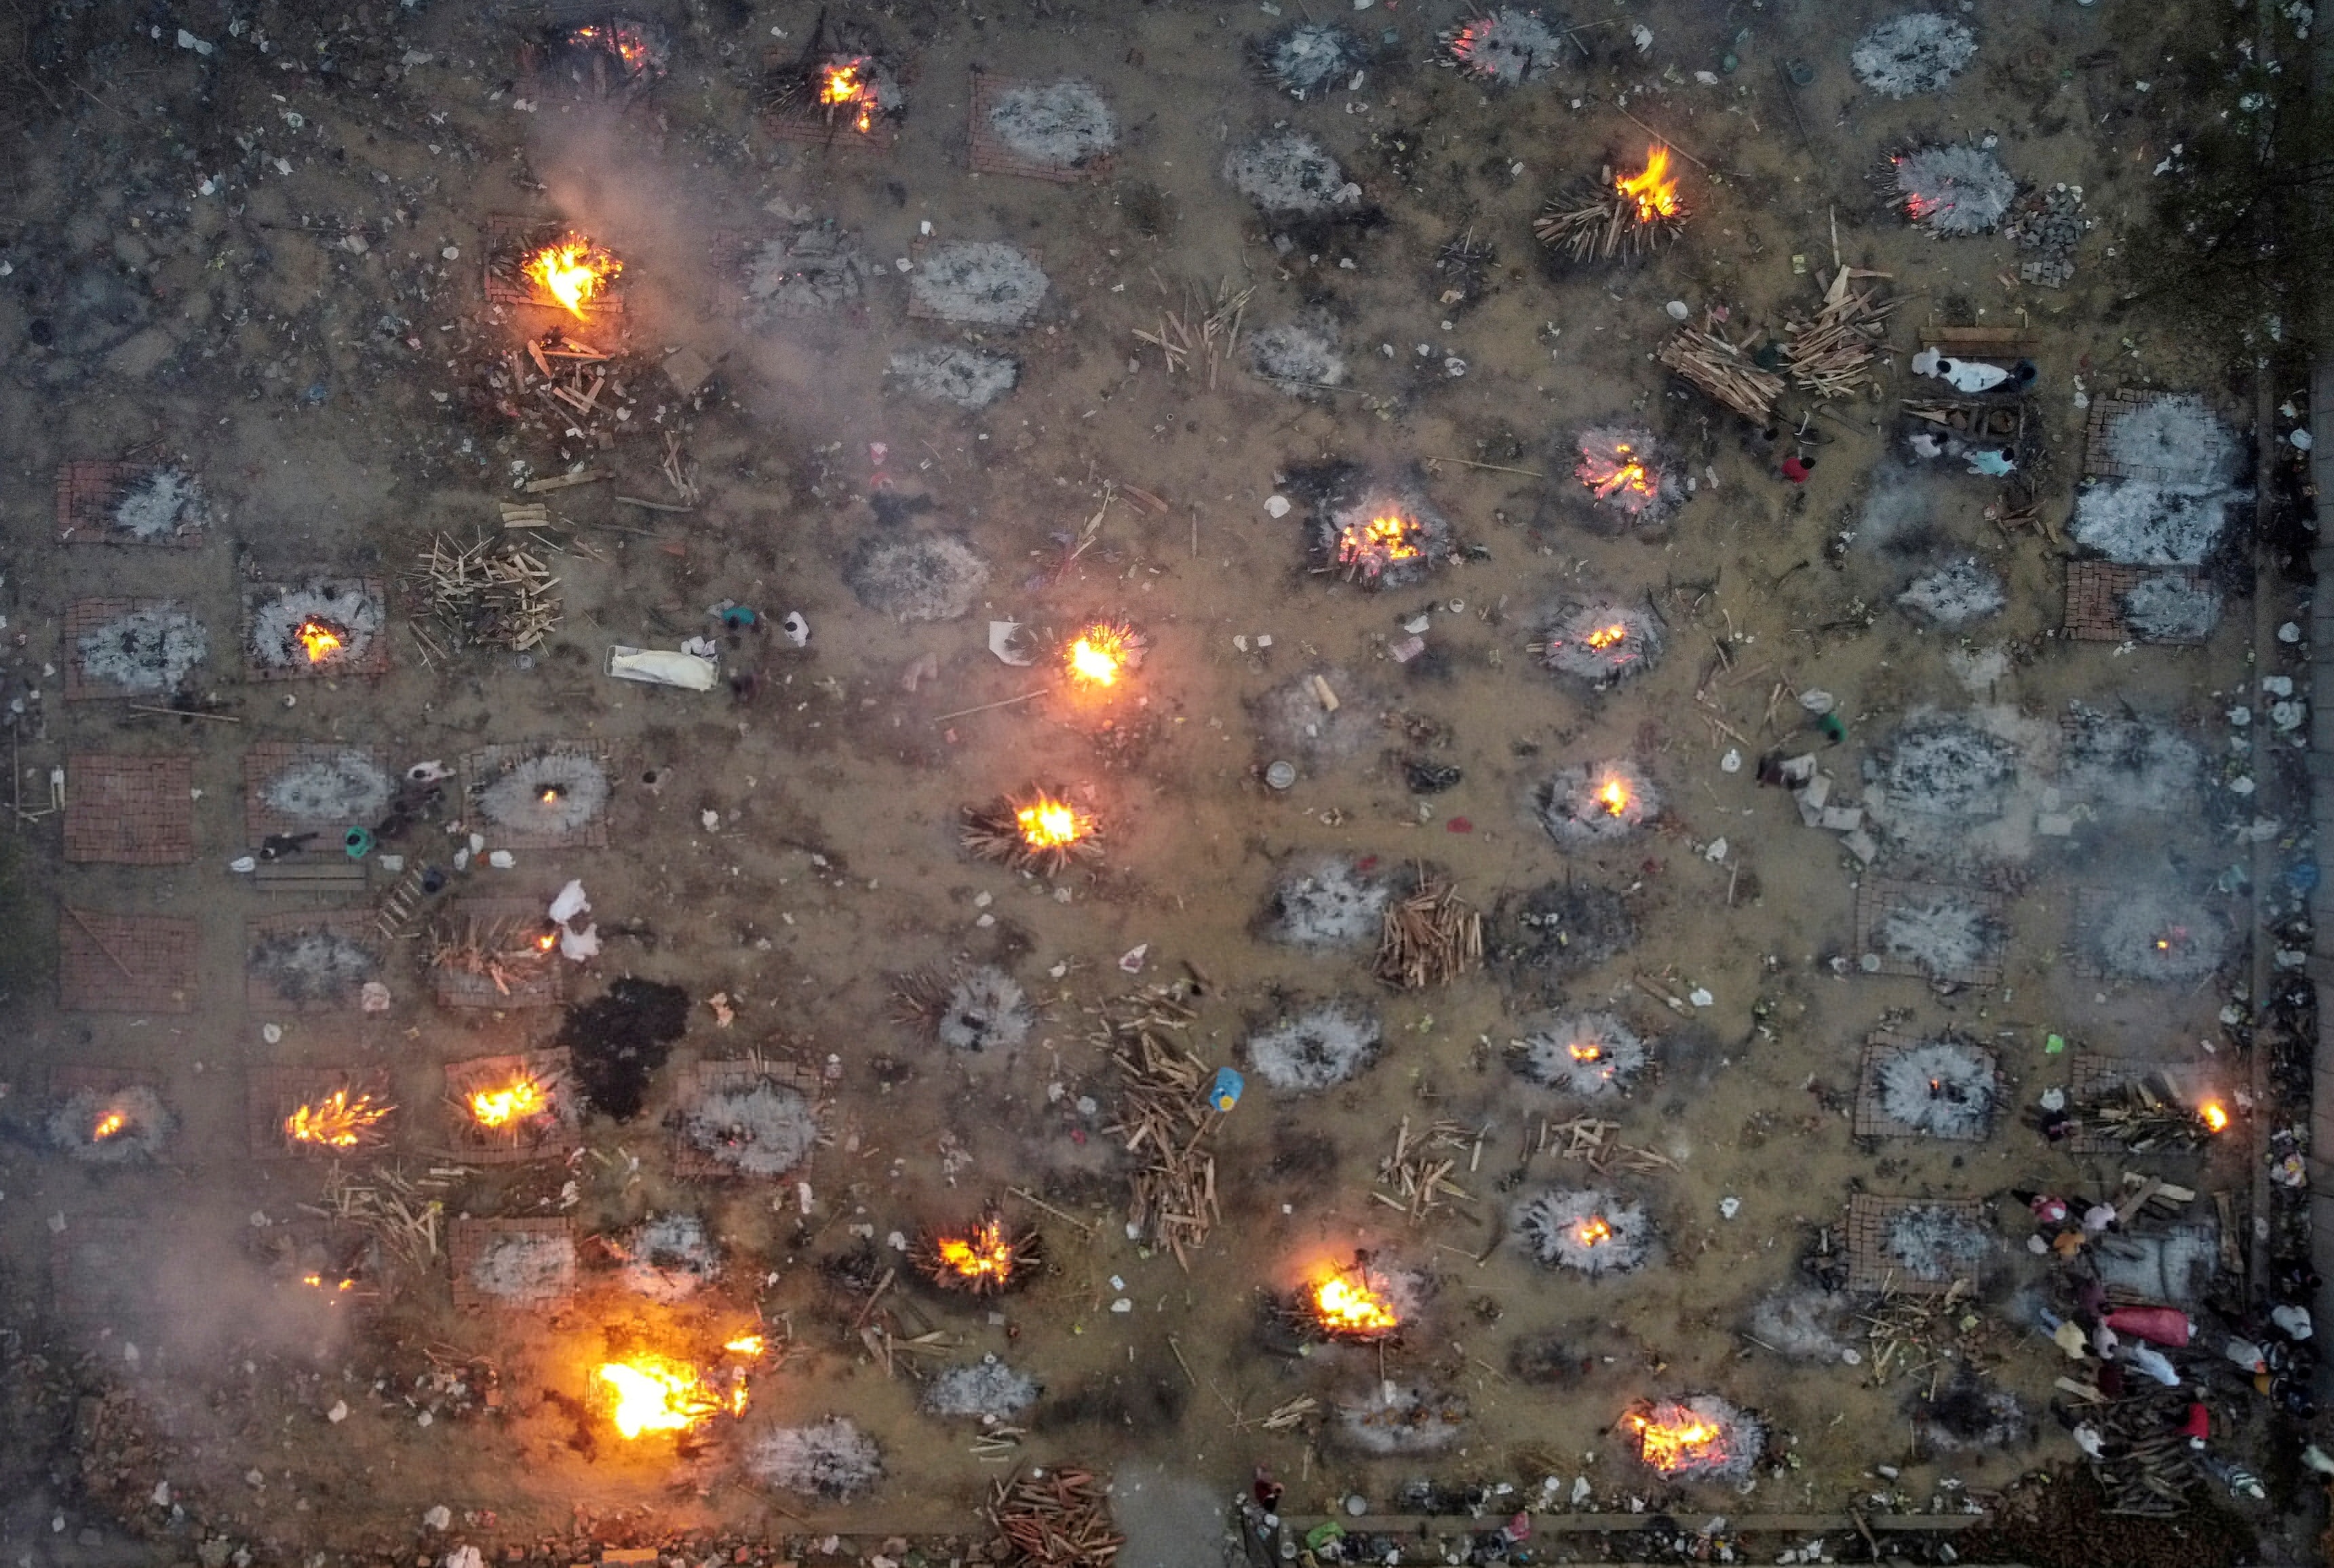 路透社摄影队从上空拍摄到的火葬场图片.jpg